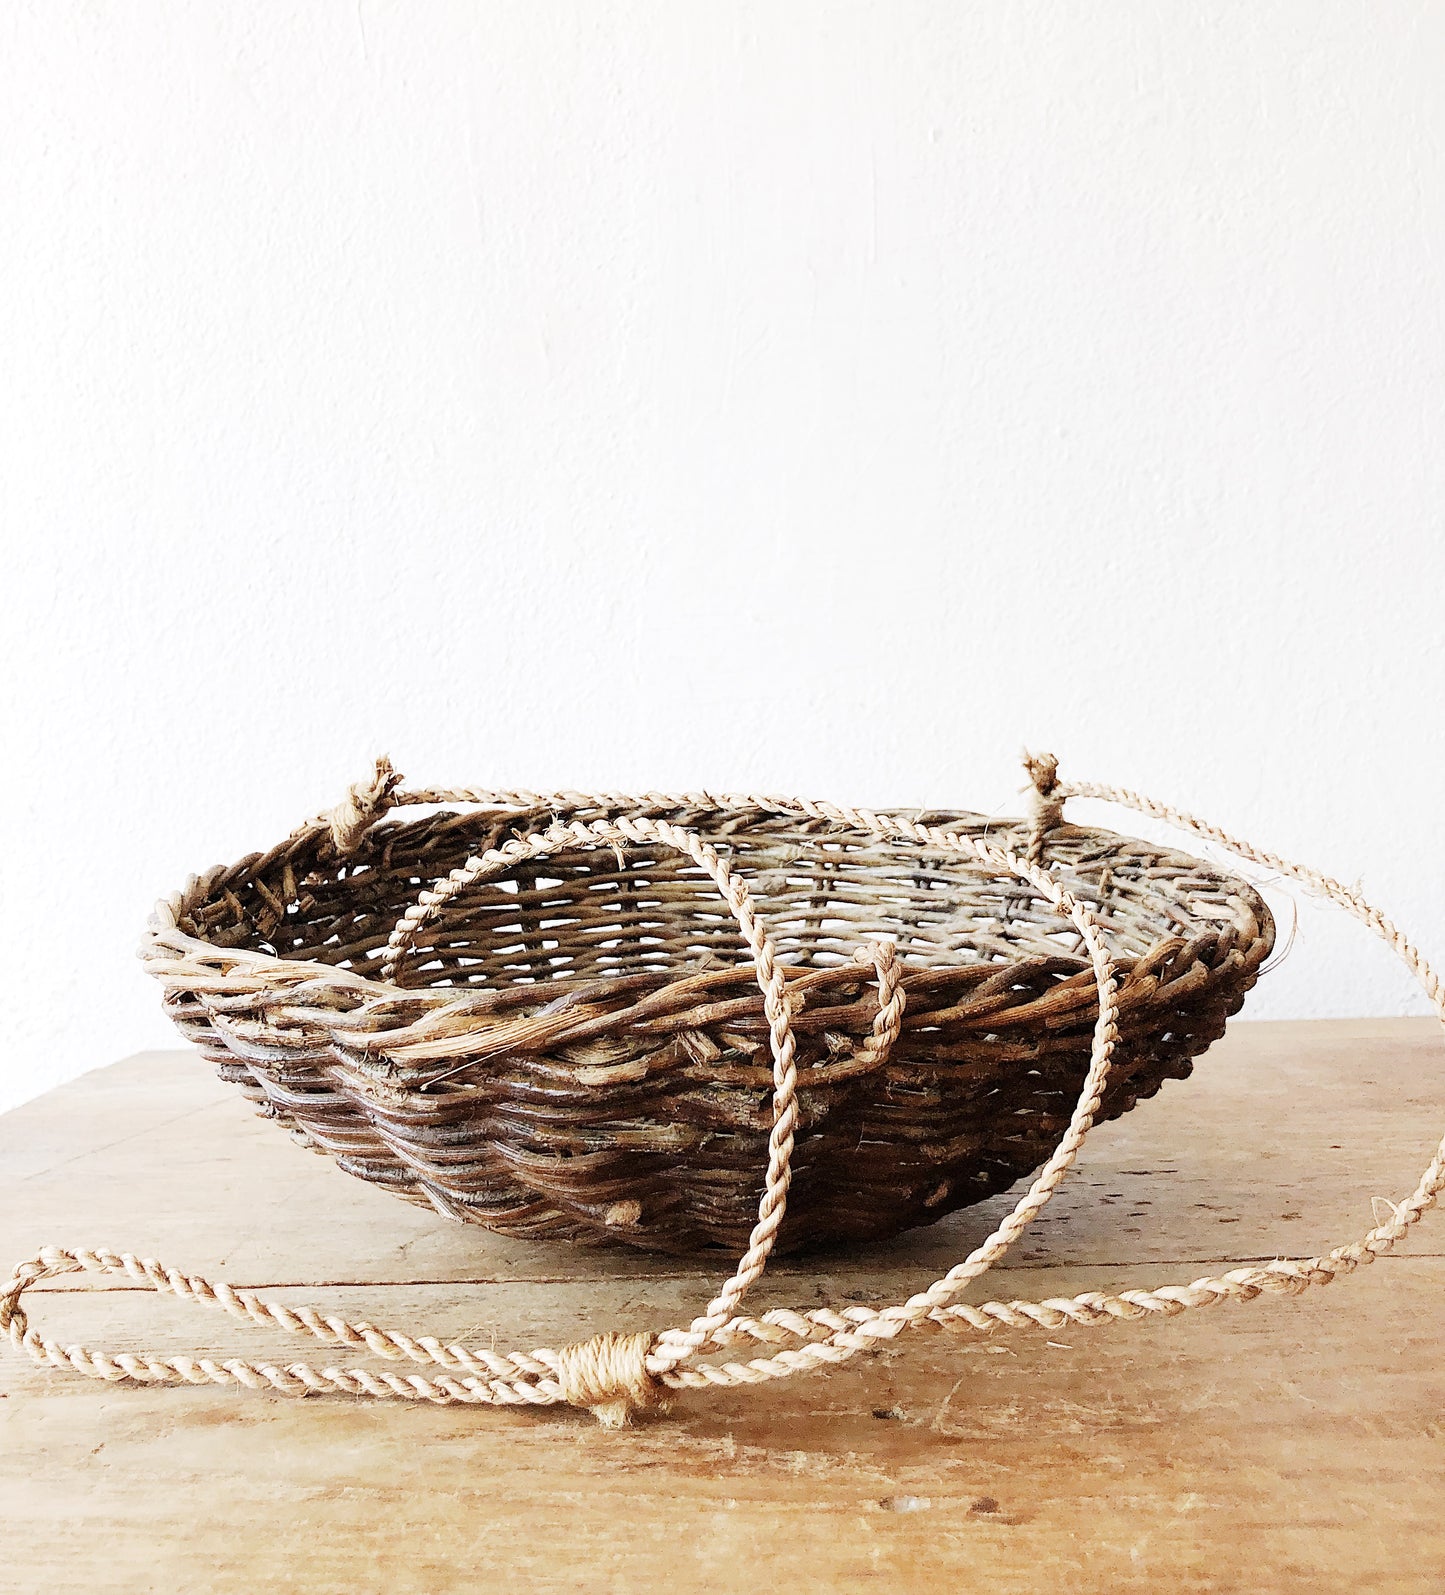 Hanging Grapevine Basket